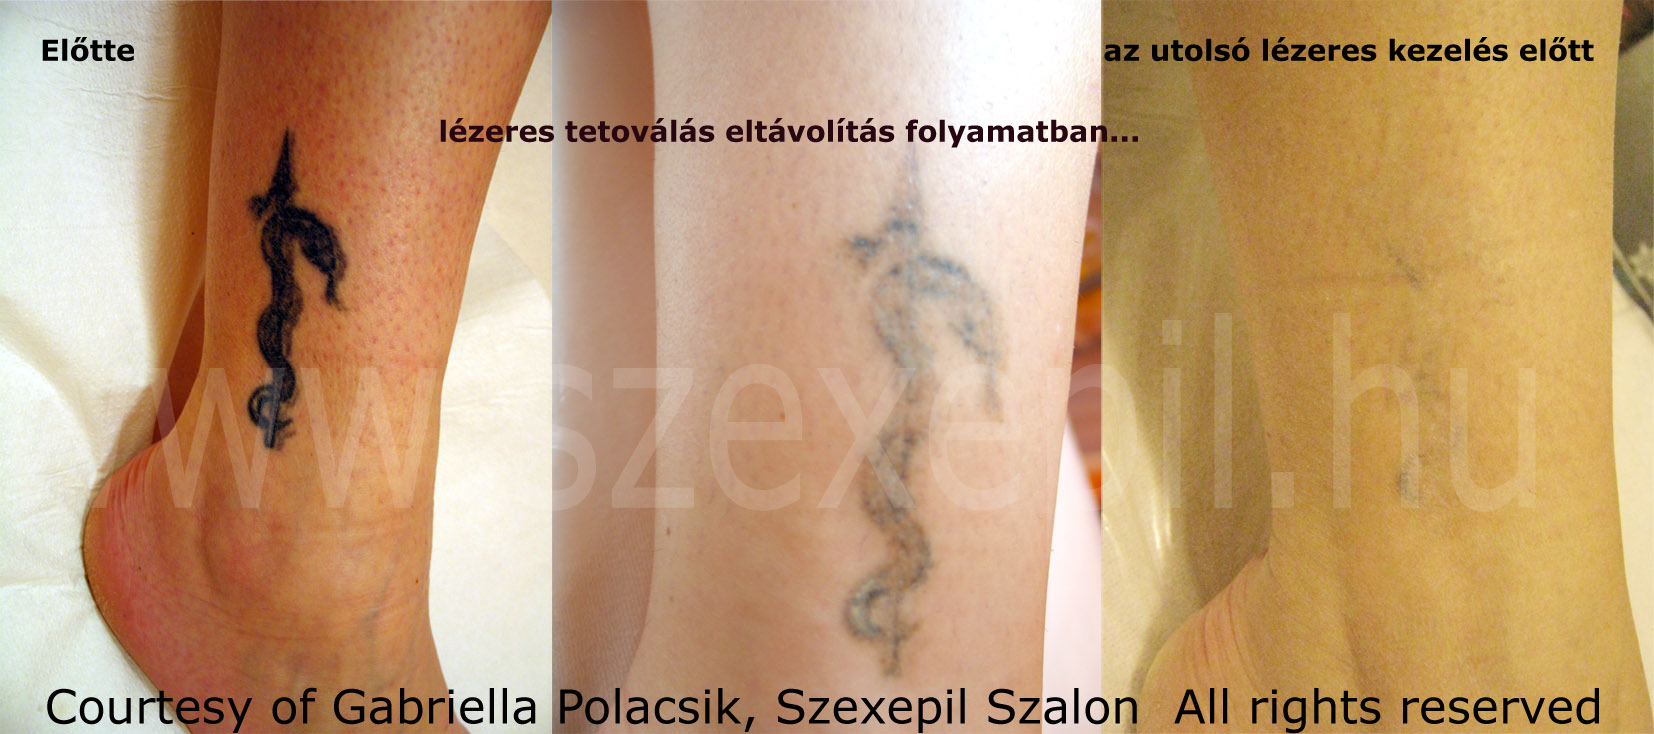 lézeres tetoválás eltávolítás folyamata, lérezes tetoválás eltávolítás ára